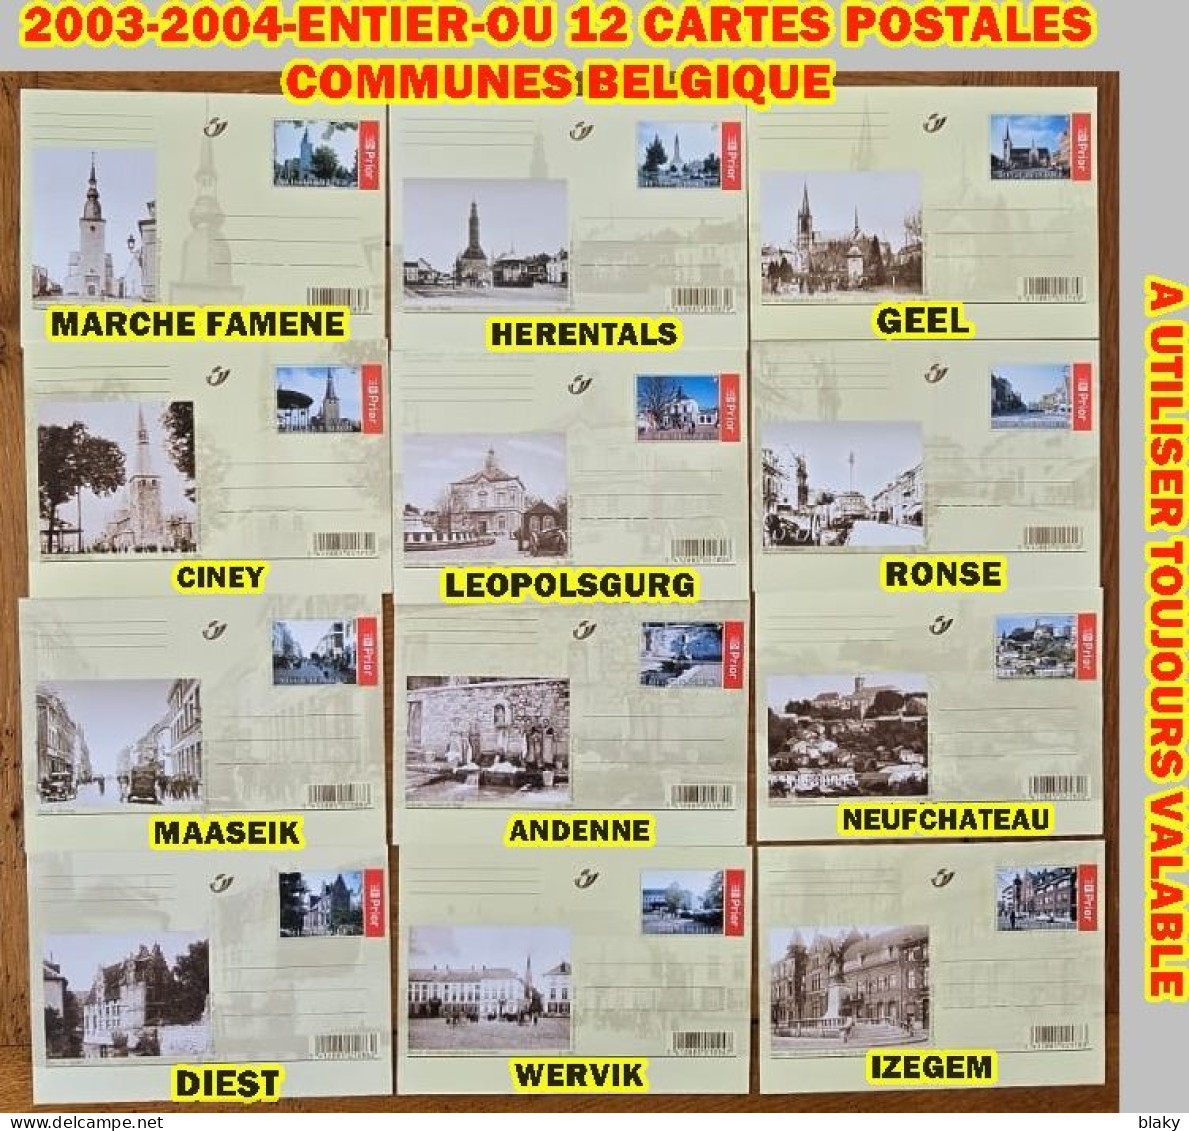 2003-2004-ENTIER-OU 12 CARTES POSTALES COMMUNES BELGES * IMPORTANT PRE TIMBREES - Illustrierte Postkarten (1971-2014) [BK]